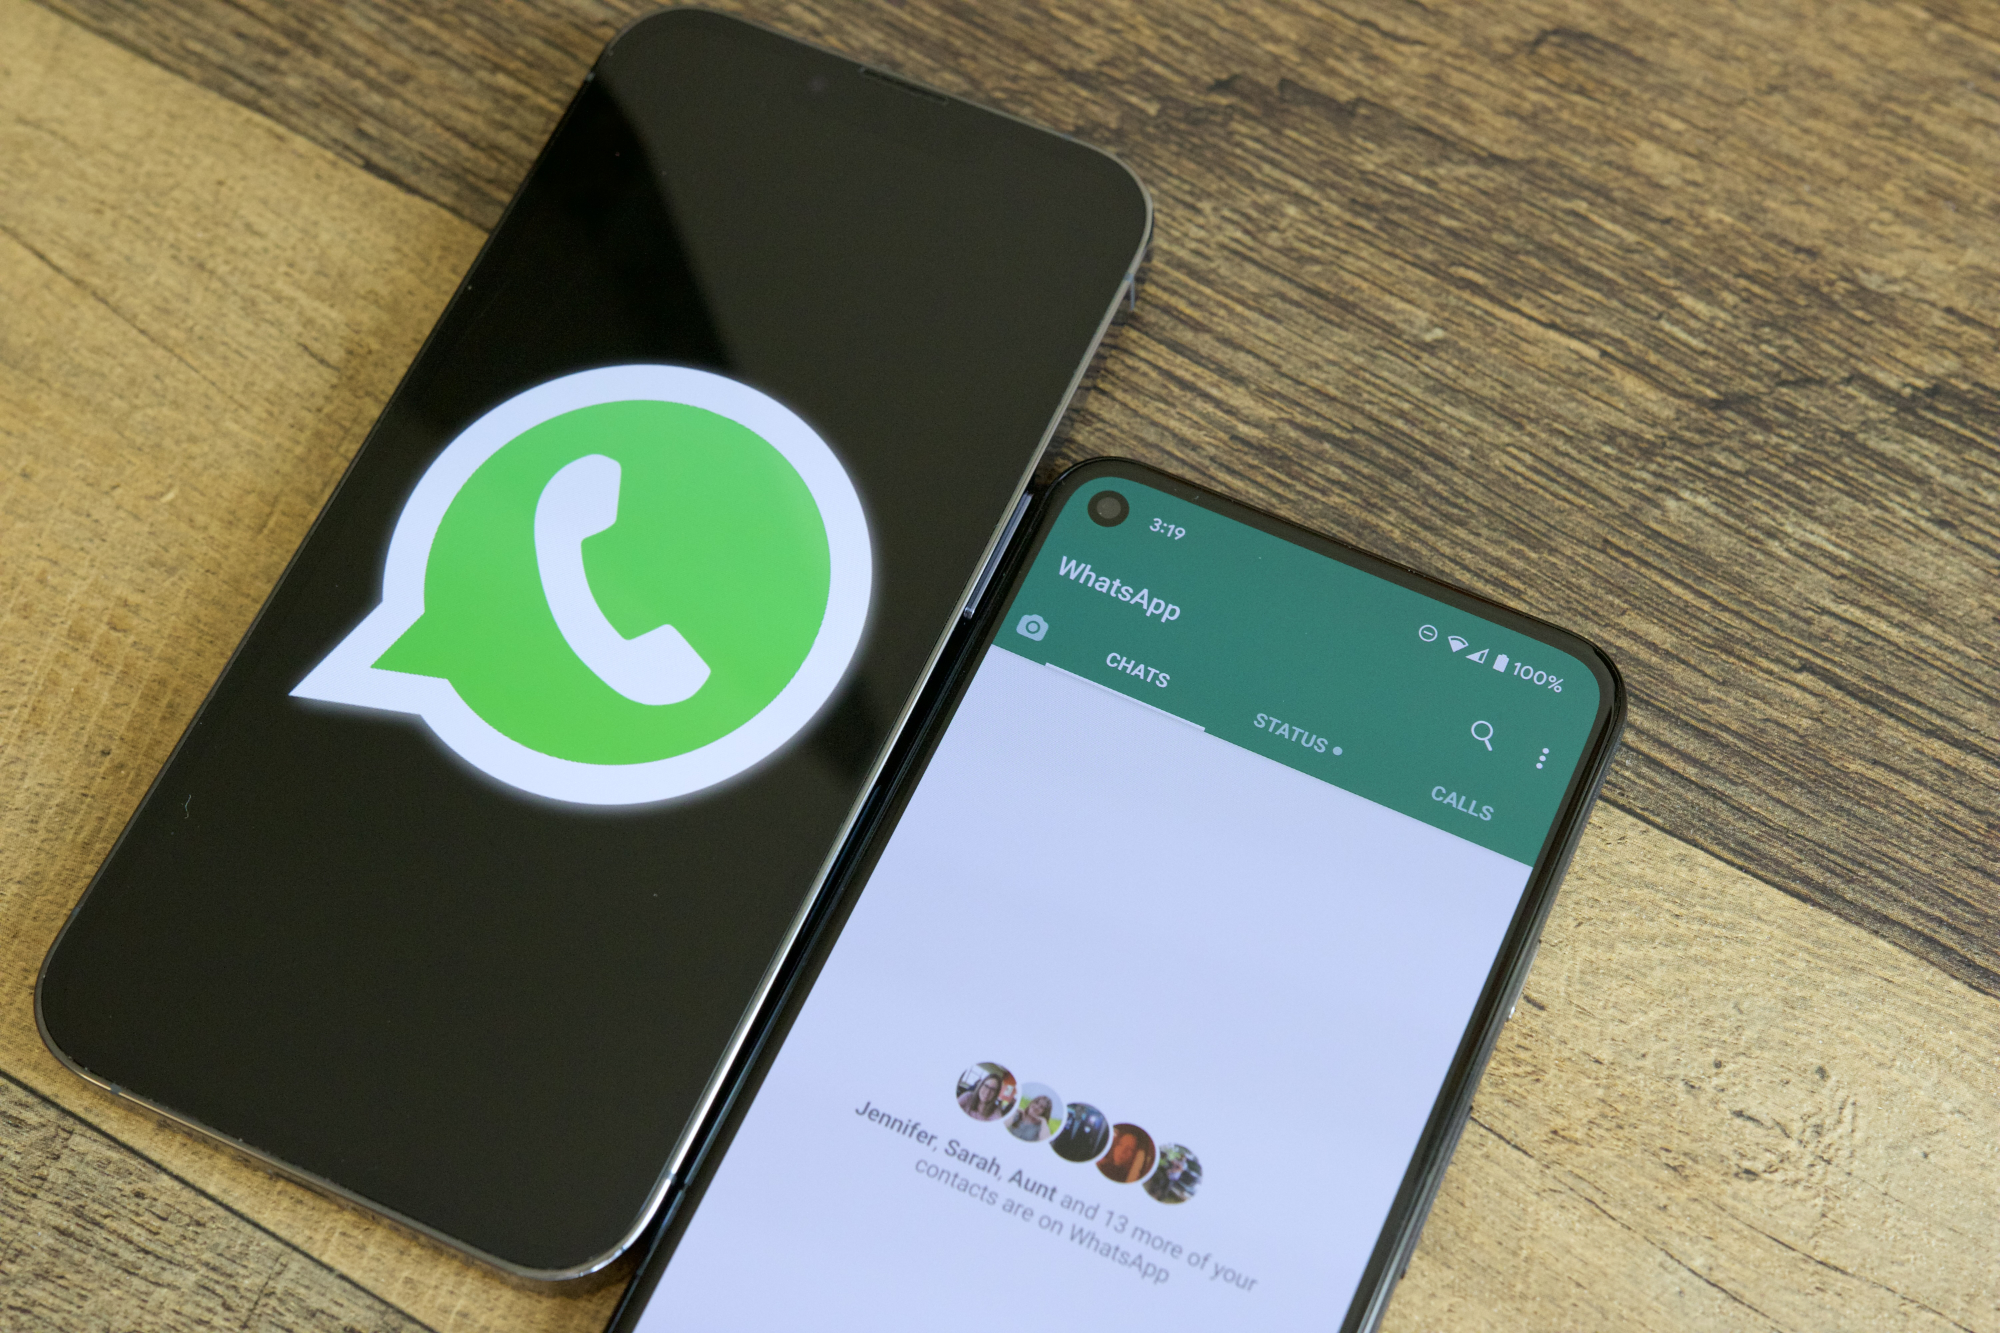 Dos teléfonos en una mesa uno al lado del otro.  Uno muestra el logotipo de WhatsApp y el otro ejecuta la aplicación WhatsApp.